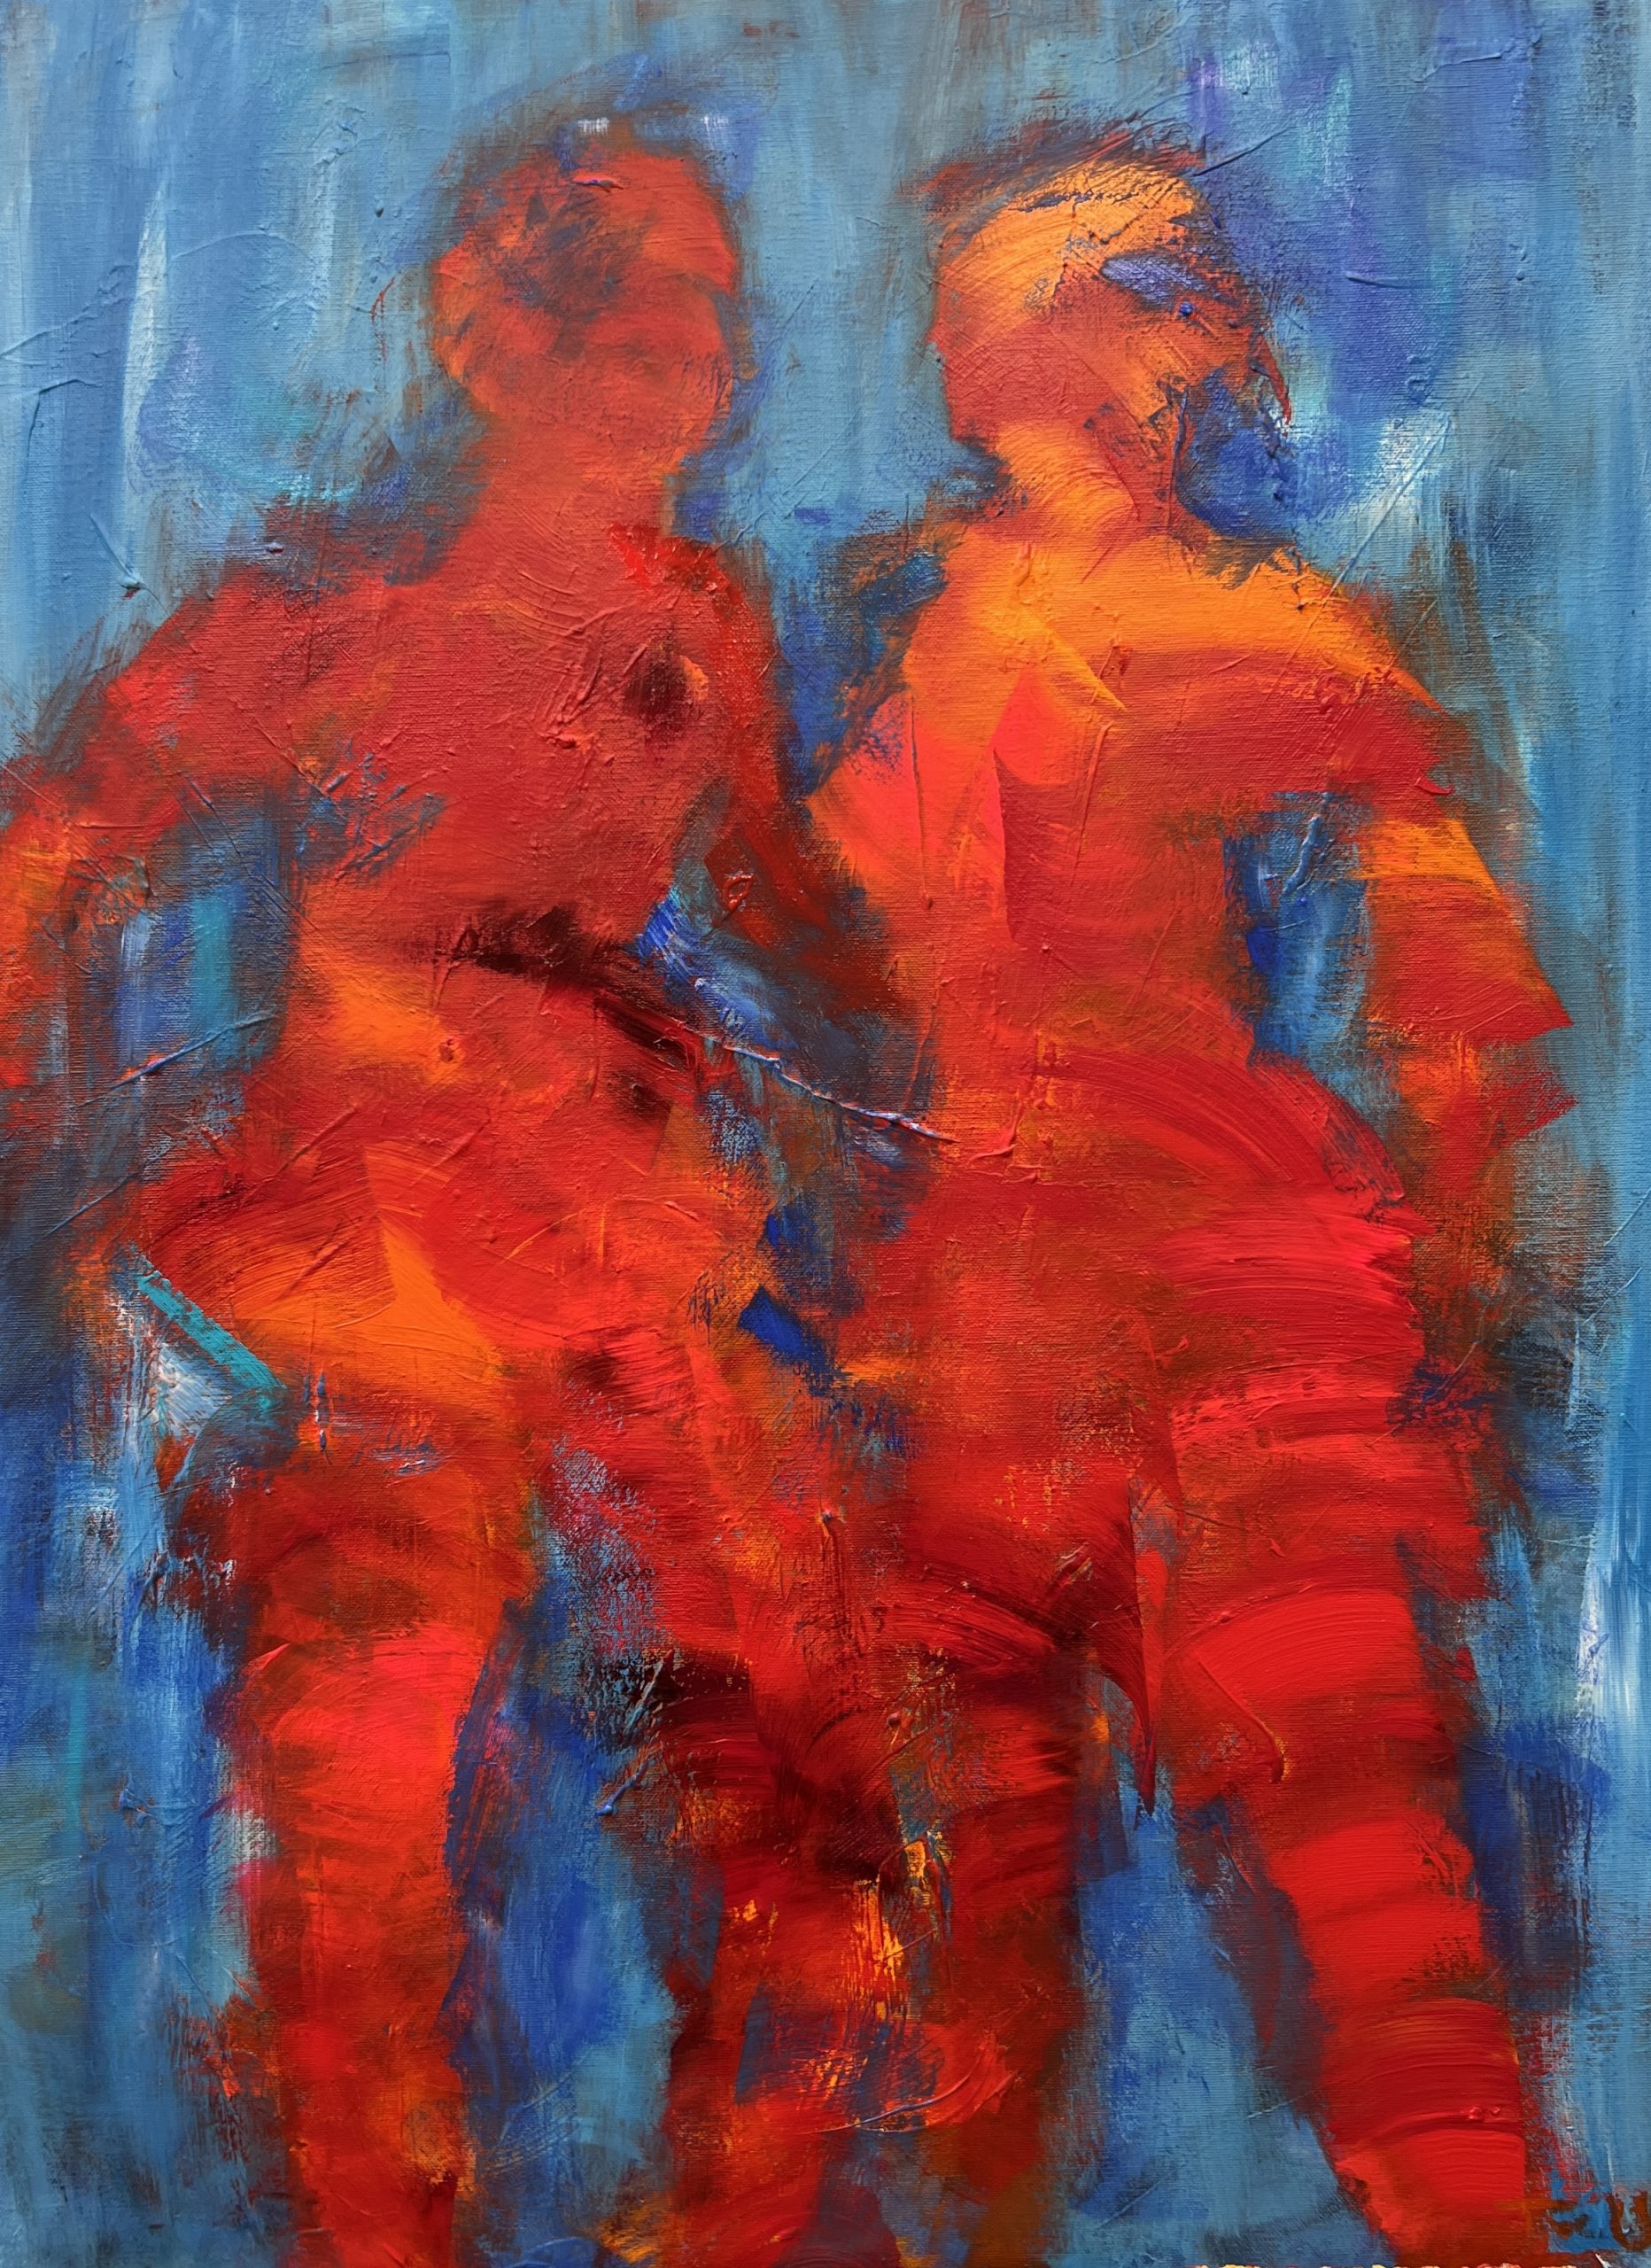 Halvabstrakt maleri hvor to personer toner frem af den blå tåge og kigger hinanden an